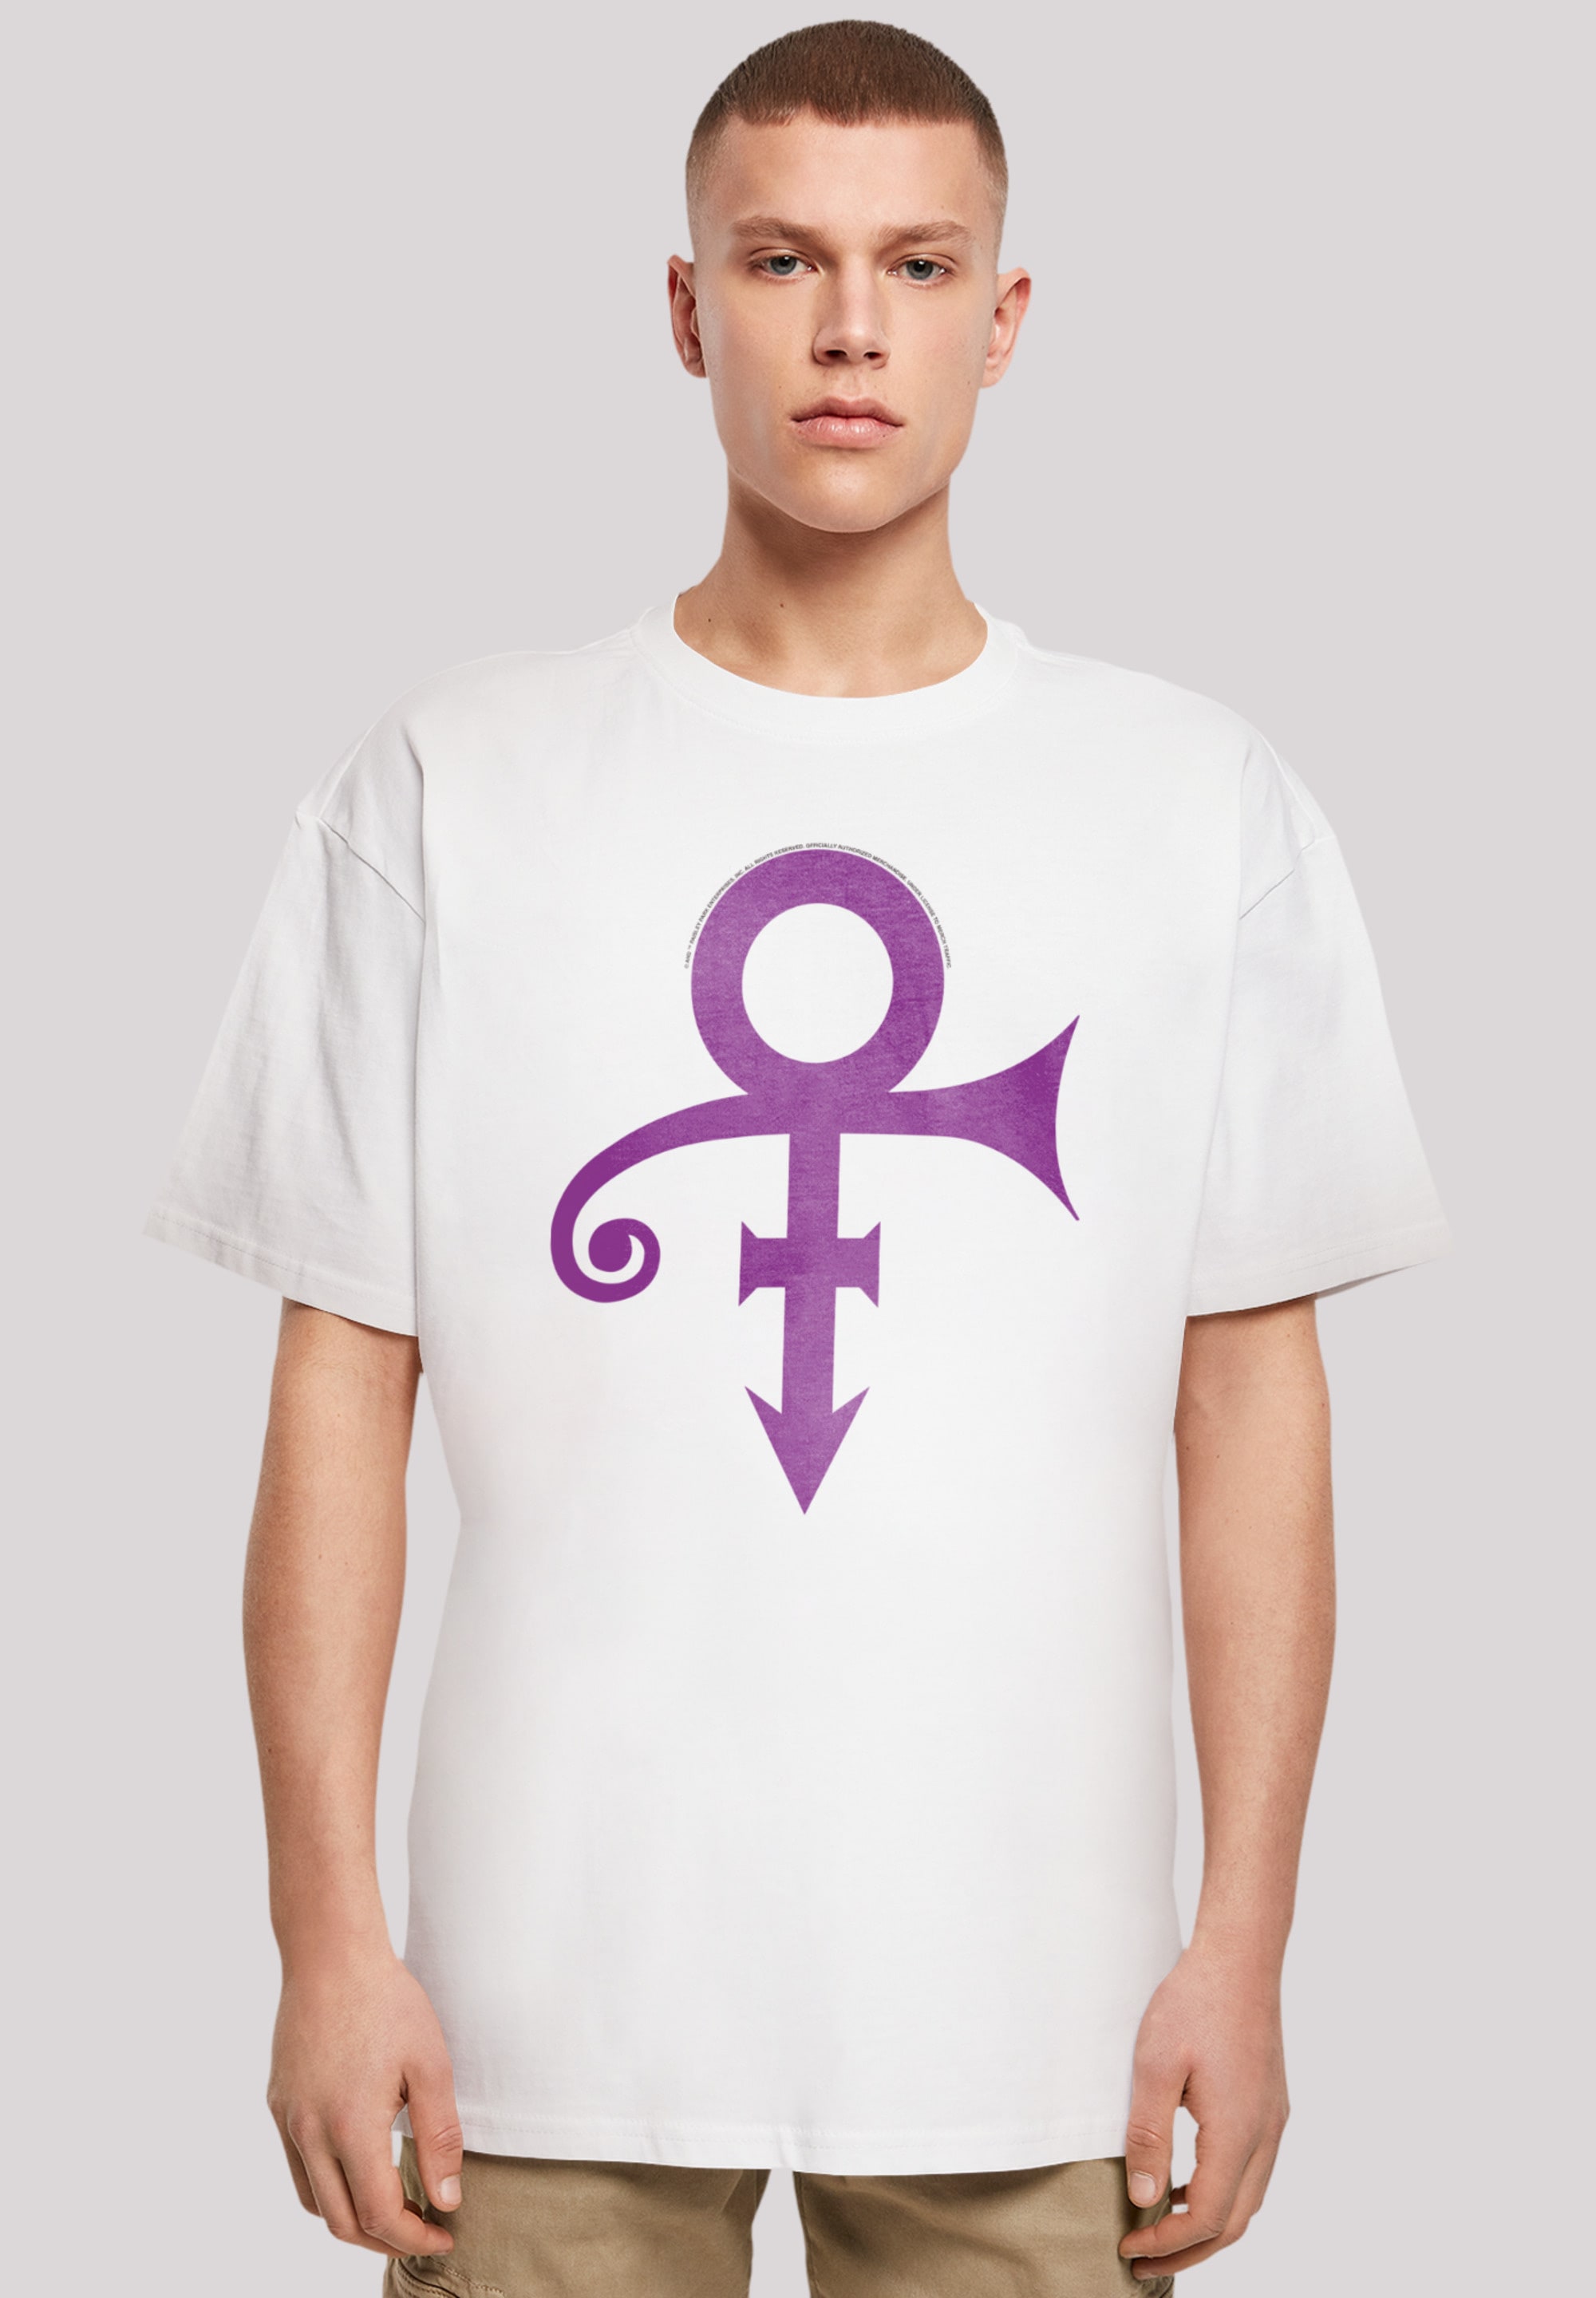 F4NT4STIC T-Shirt »Prince Musik Album für Qualität, | Band BAUR Rock-Musik, ▷ Logo«, Premium